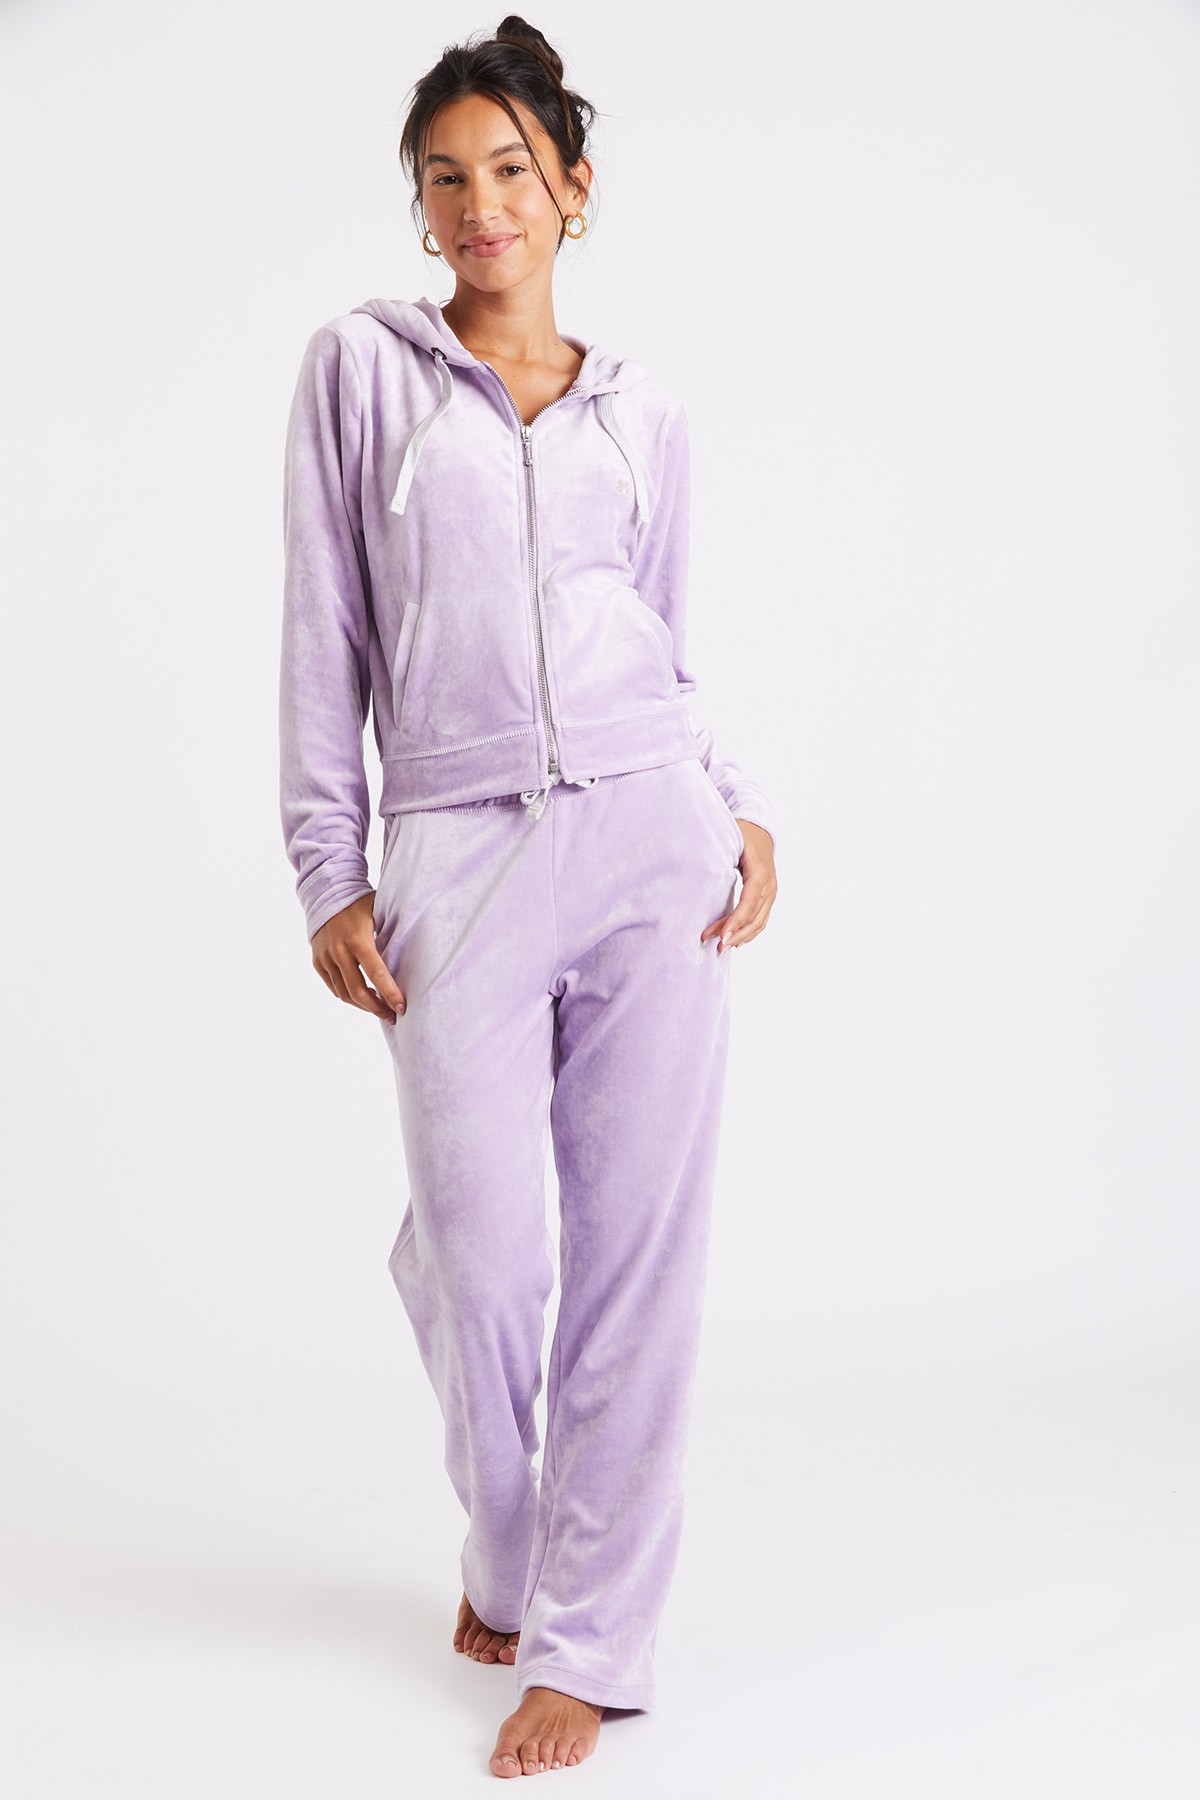 jogger Sealake purple velour Moon® pants Banana | Lenny lilac